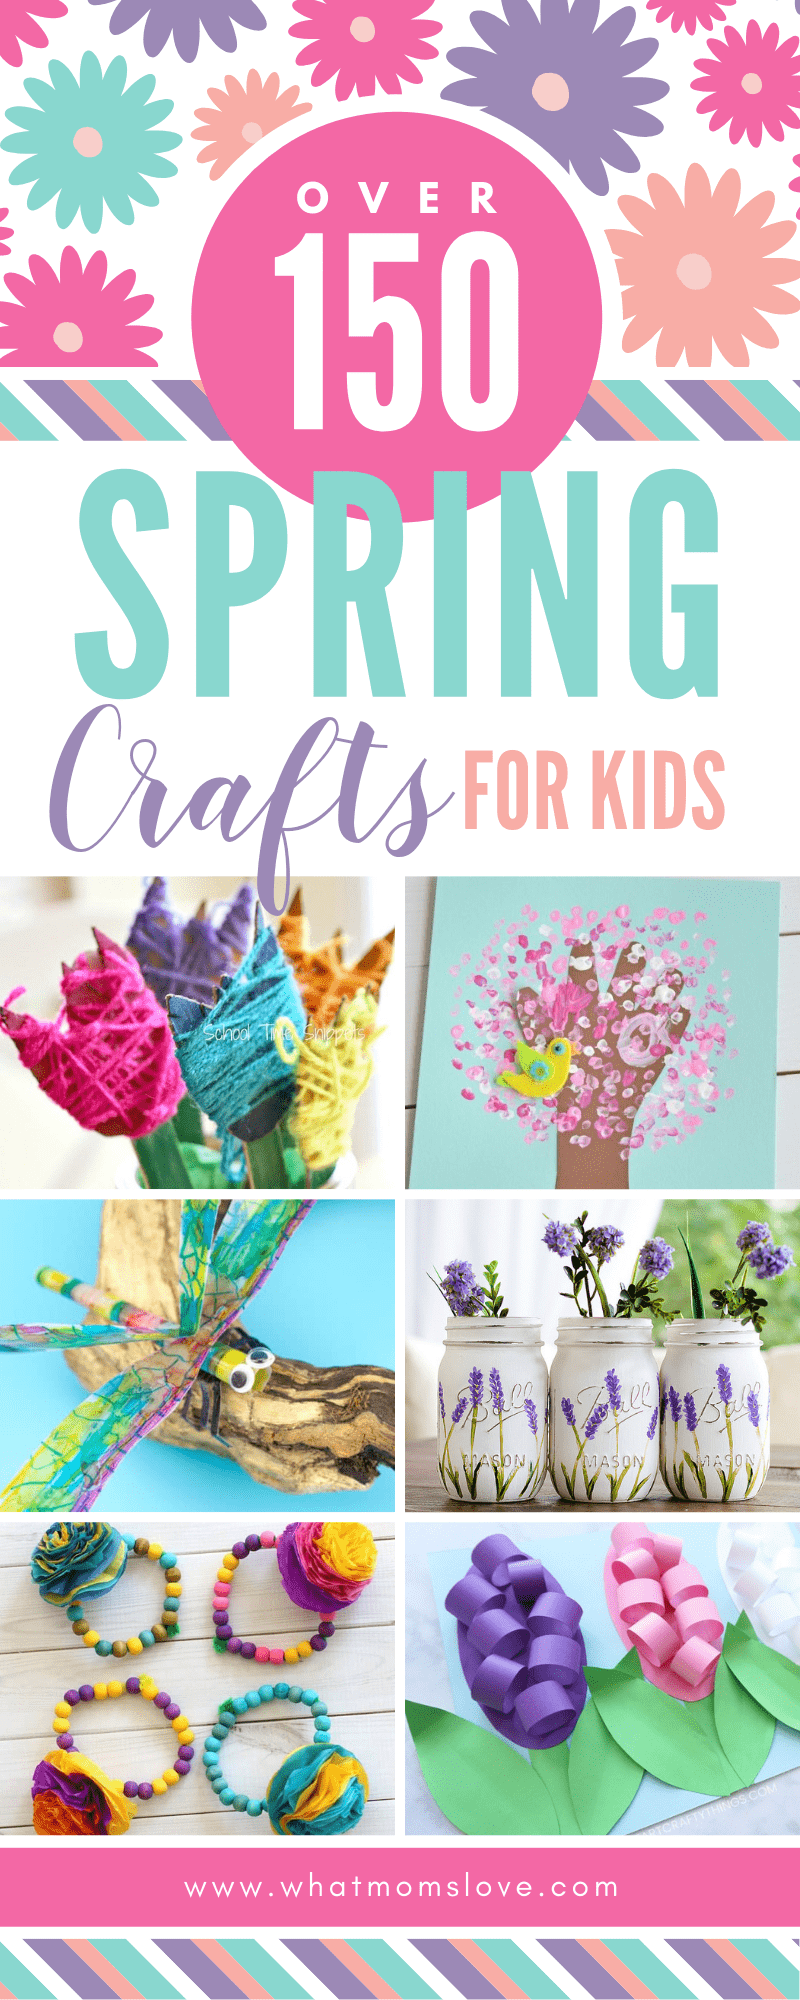 https://cdn.whatmomslove.com/wp-content/uploads/2019/02/Spring-Crafts-for-Kids.png